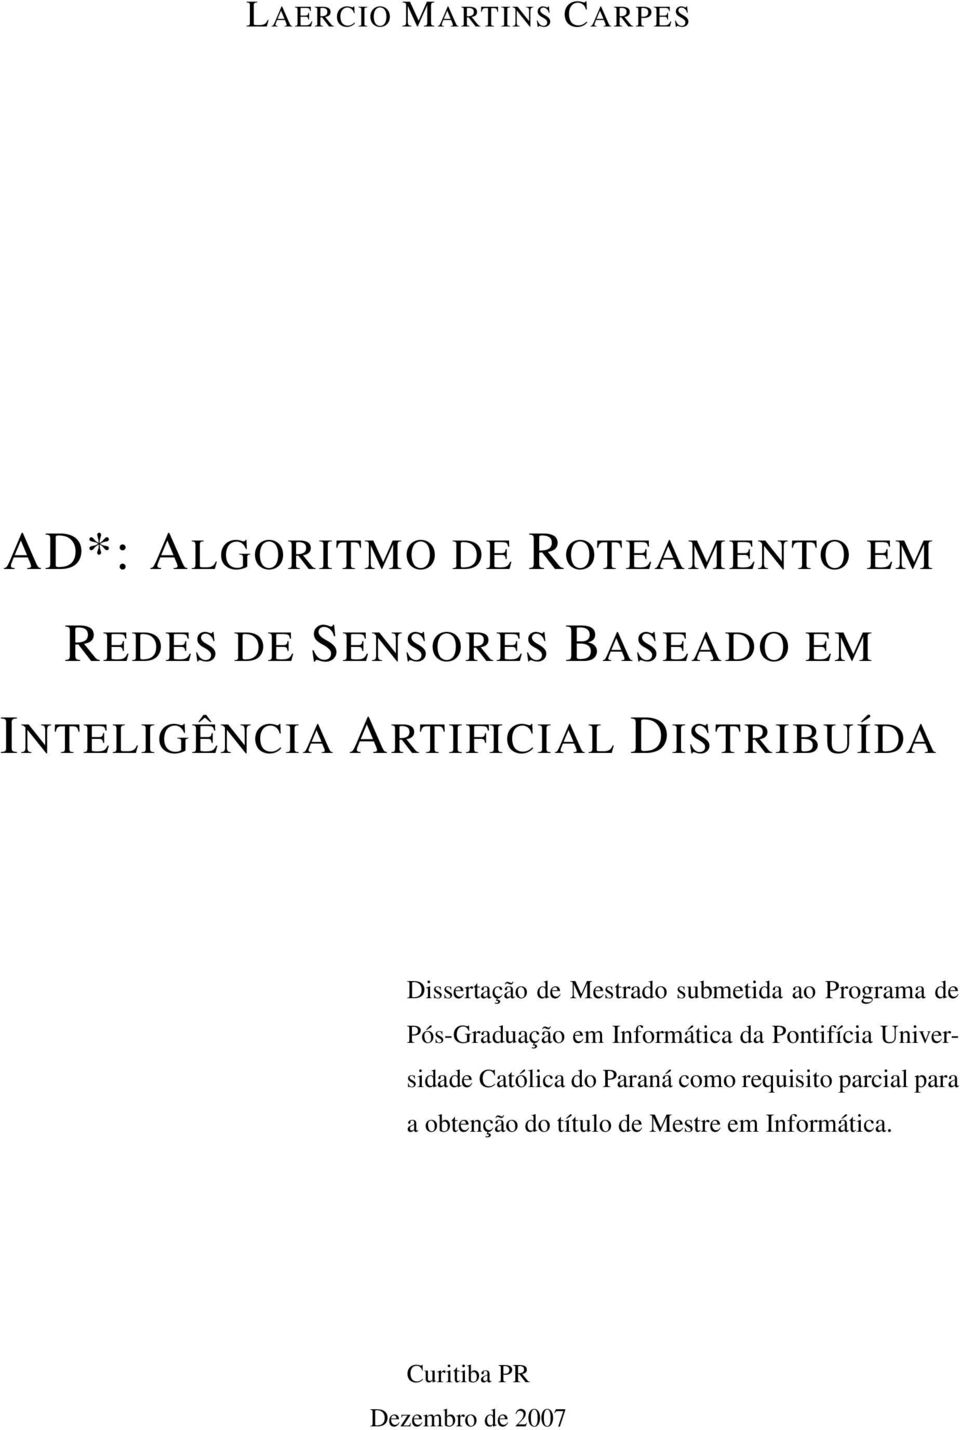 Pós-Graduação em Informática da Pontifícia Universidade Católica do Paraná como